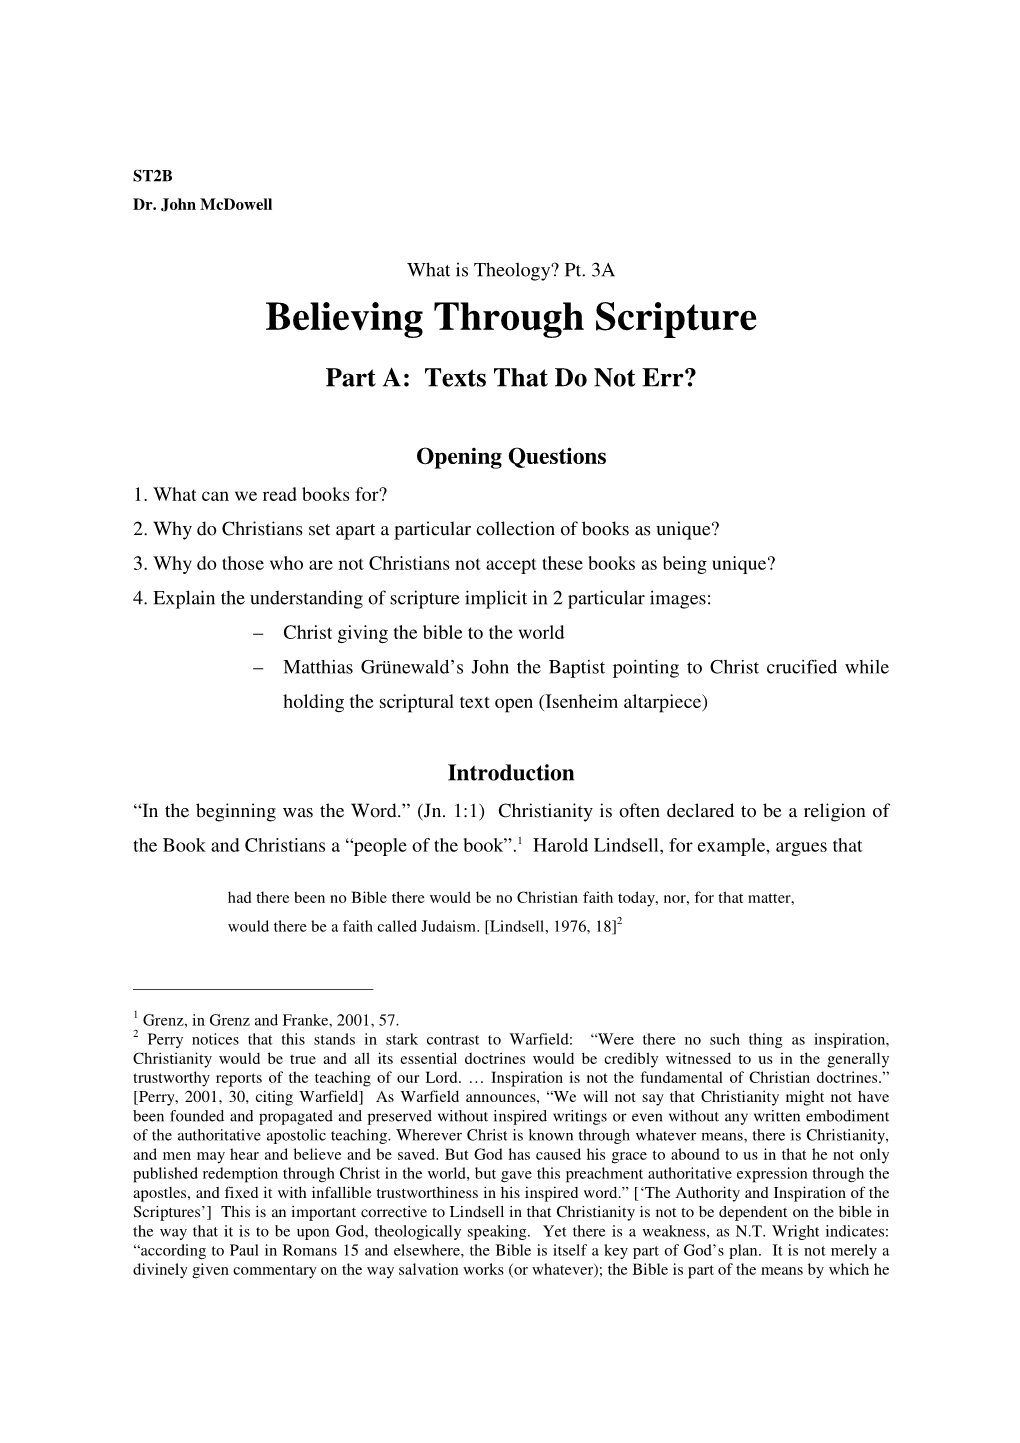 Believing Through Scripture